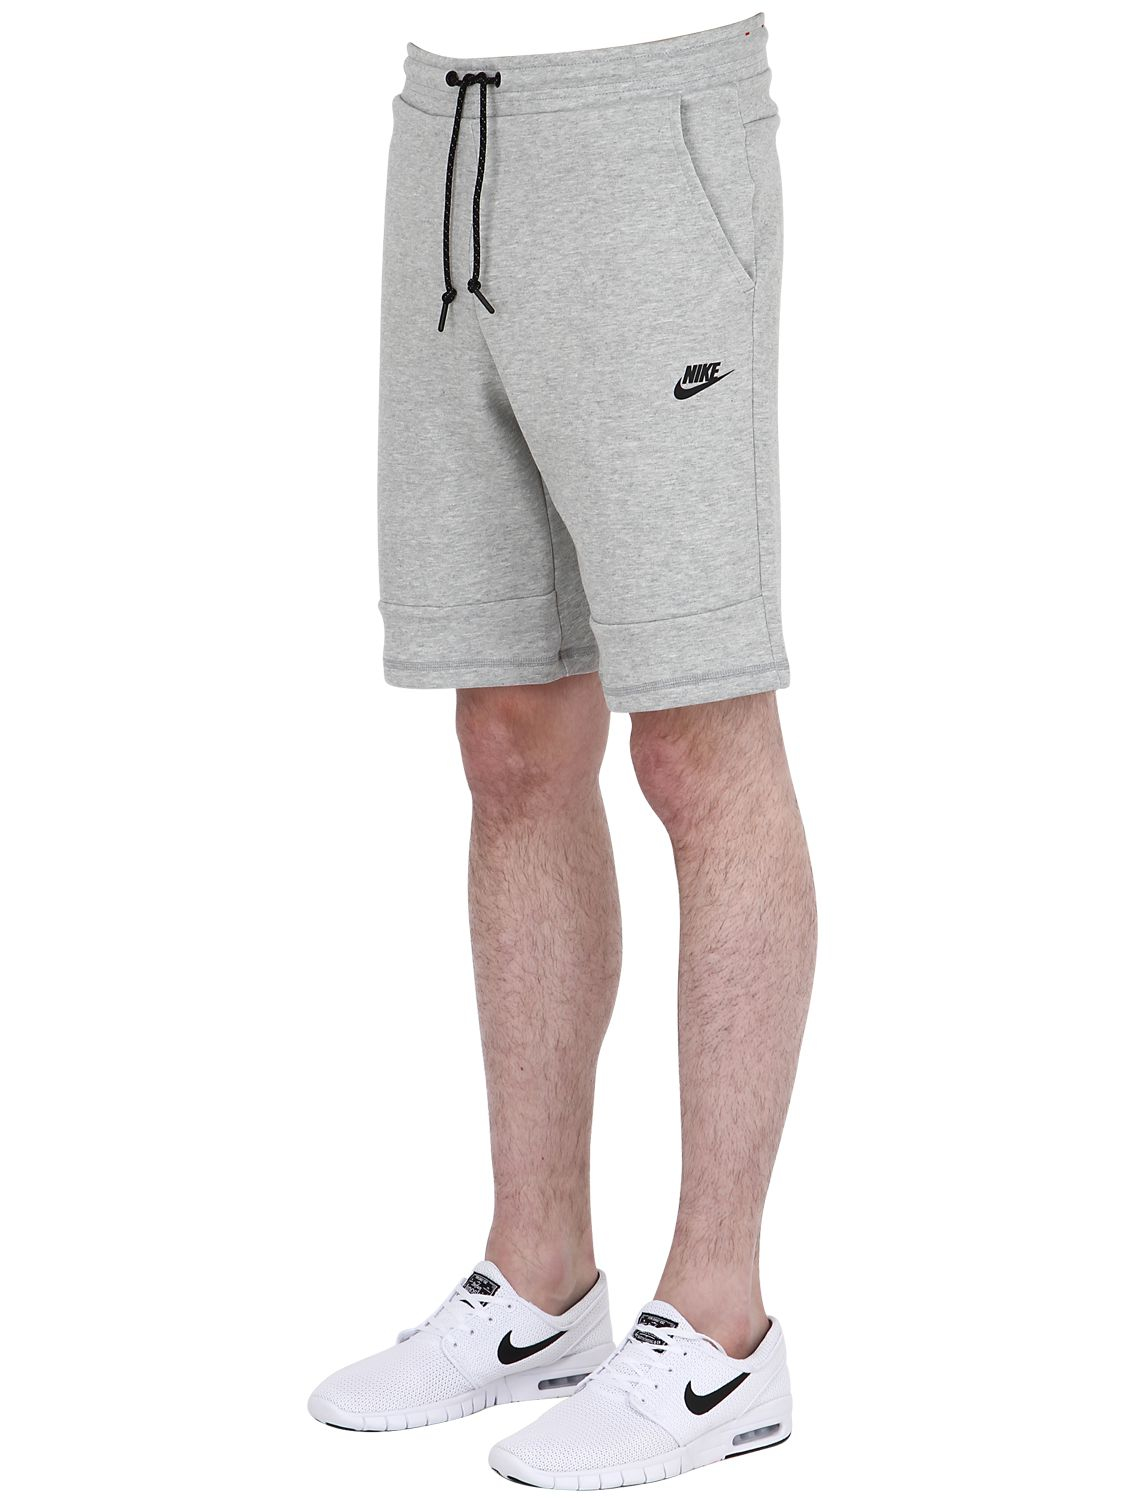 nike jogger shorts grey